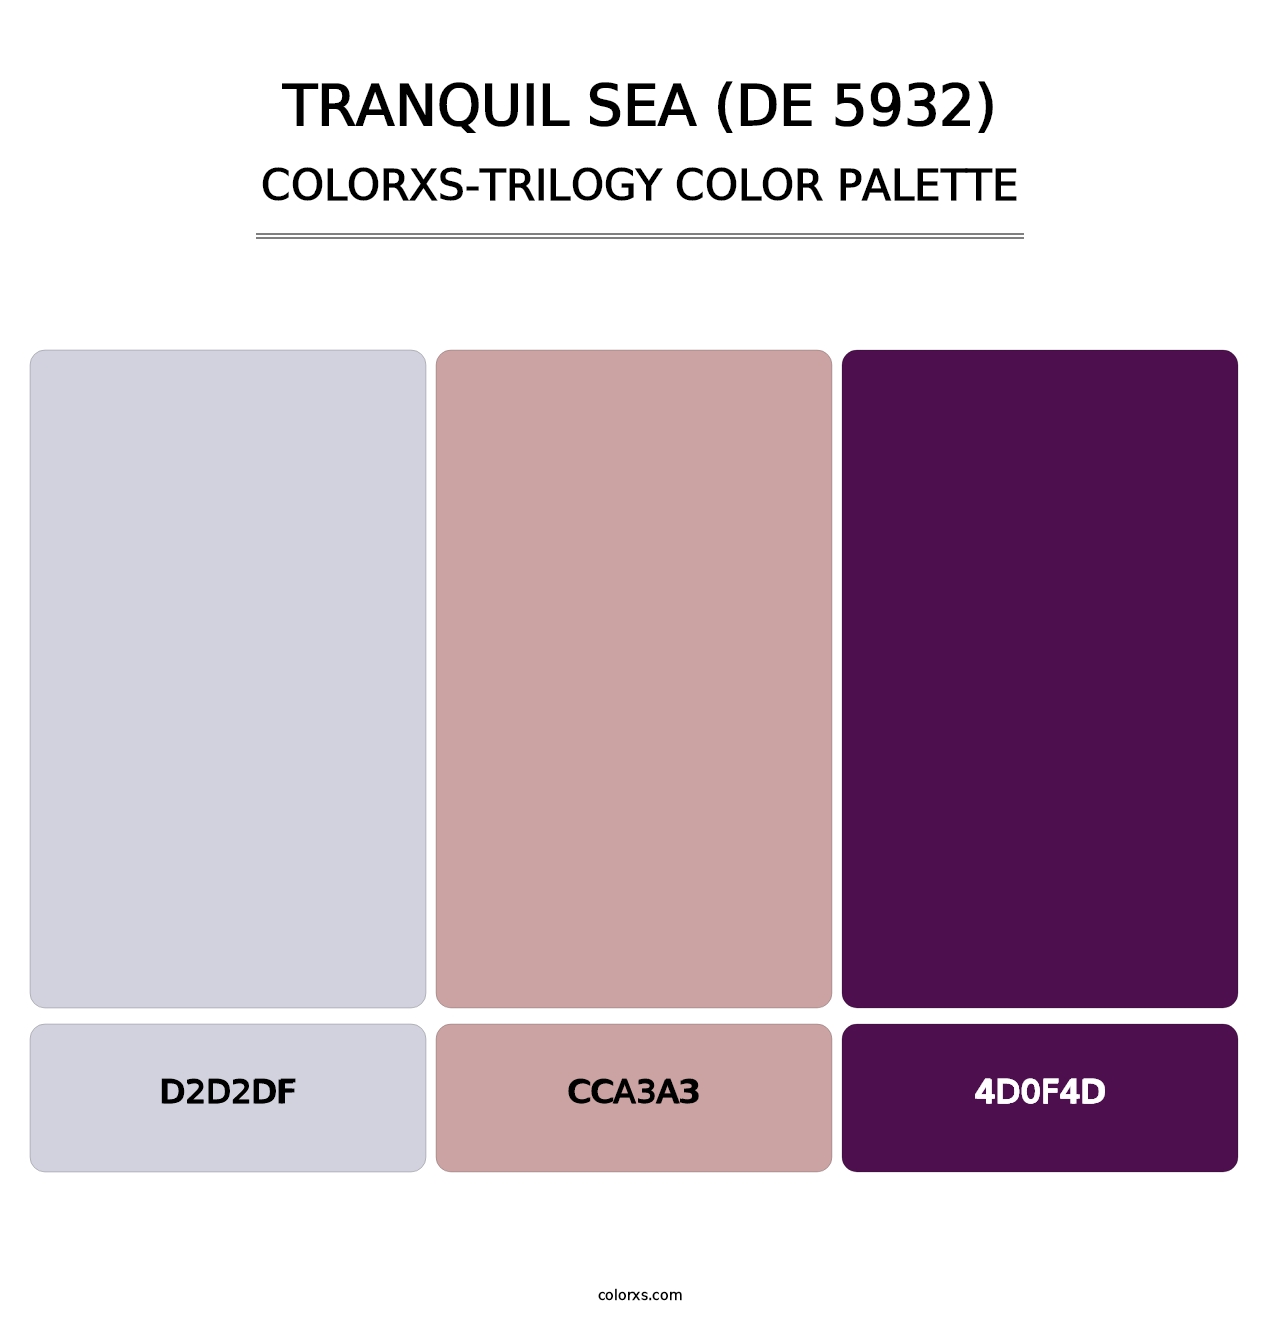 Tranquil Sea (DE 5932) - Colorxs Trilogy Palette